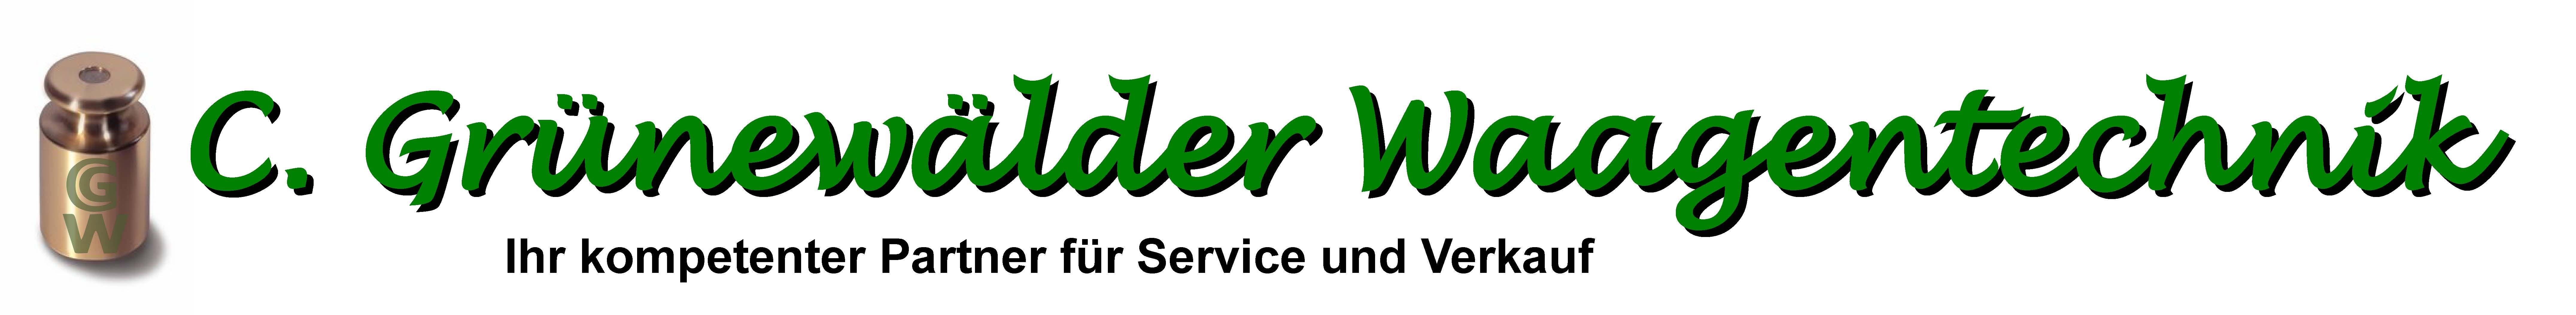 Wägetechnik aus Nordrhein-Westfalen – C. Grünewälder Waagentechnik